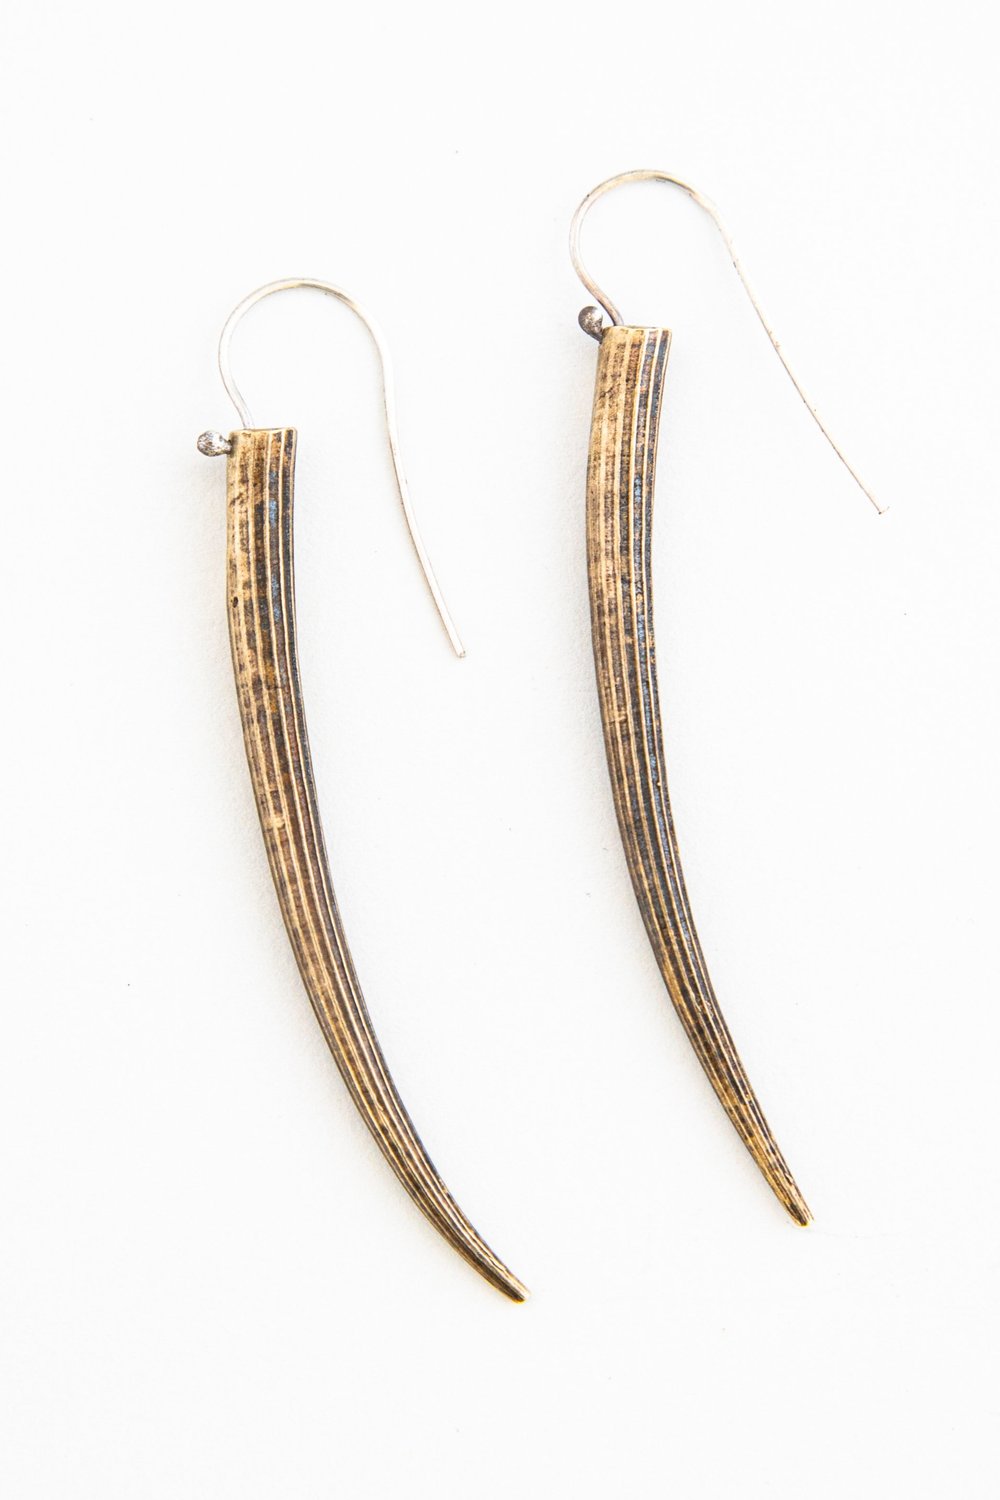 Dentalium Shell Earrings- Bronze Stacy Design